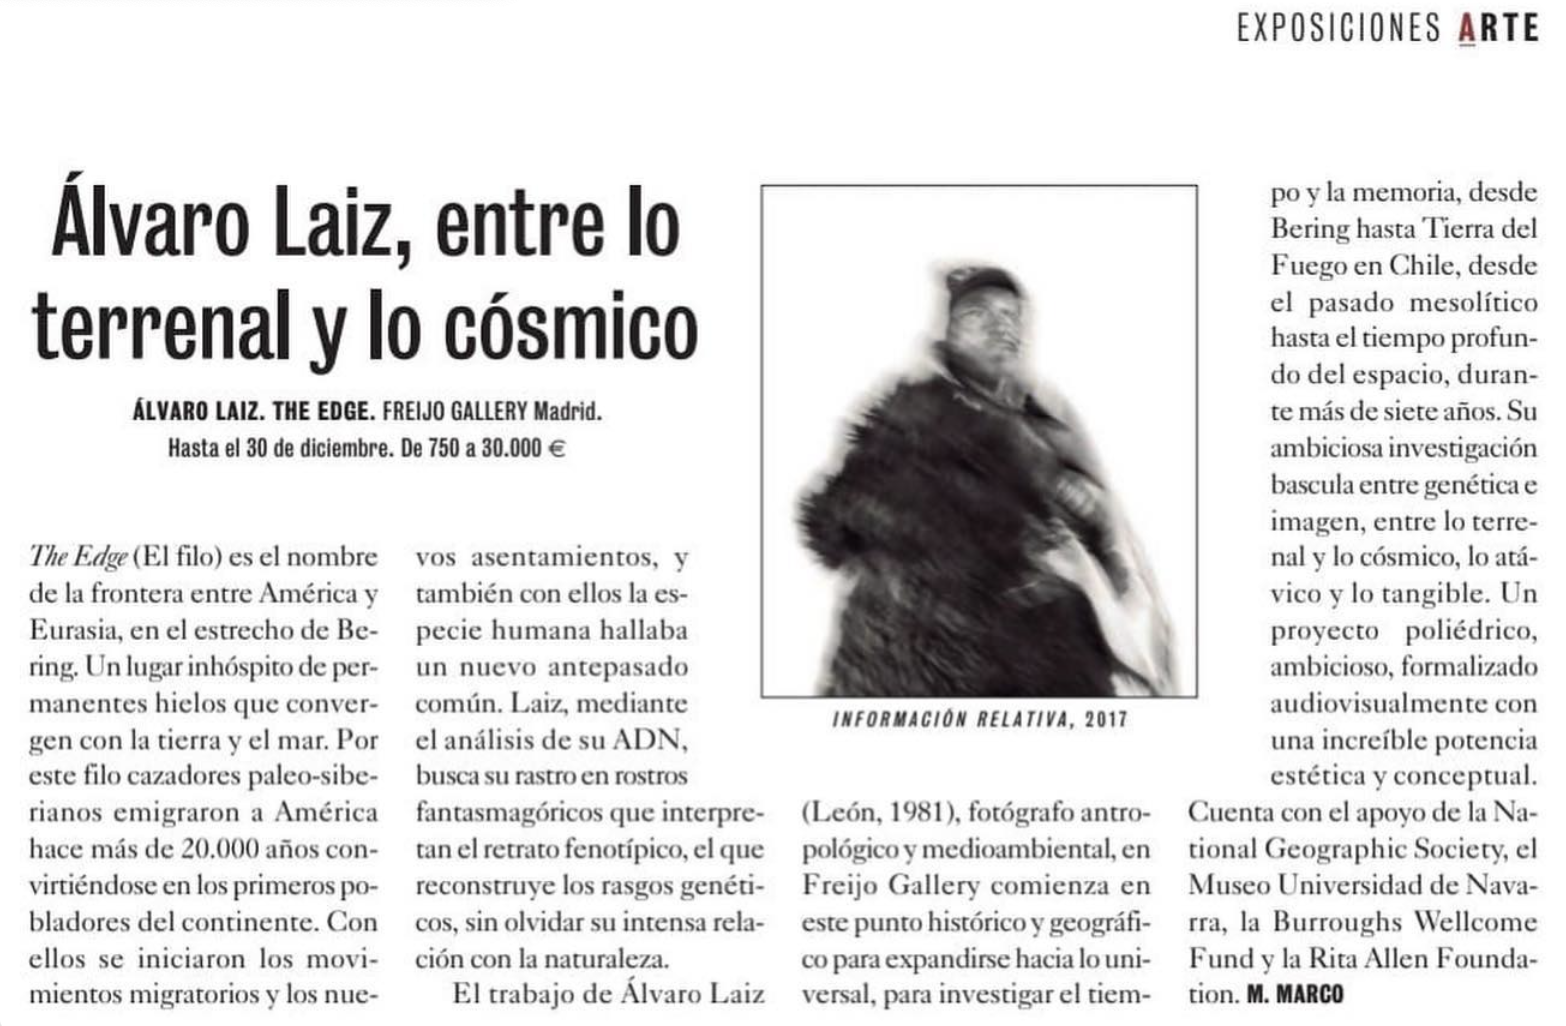 Article about Álvaro Laiz's exhibition | El Cultural